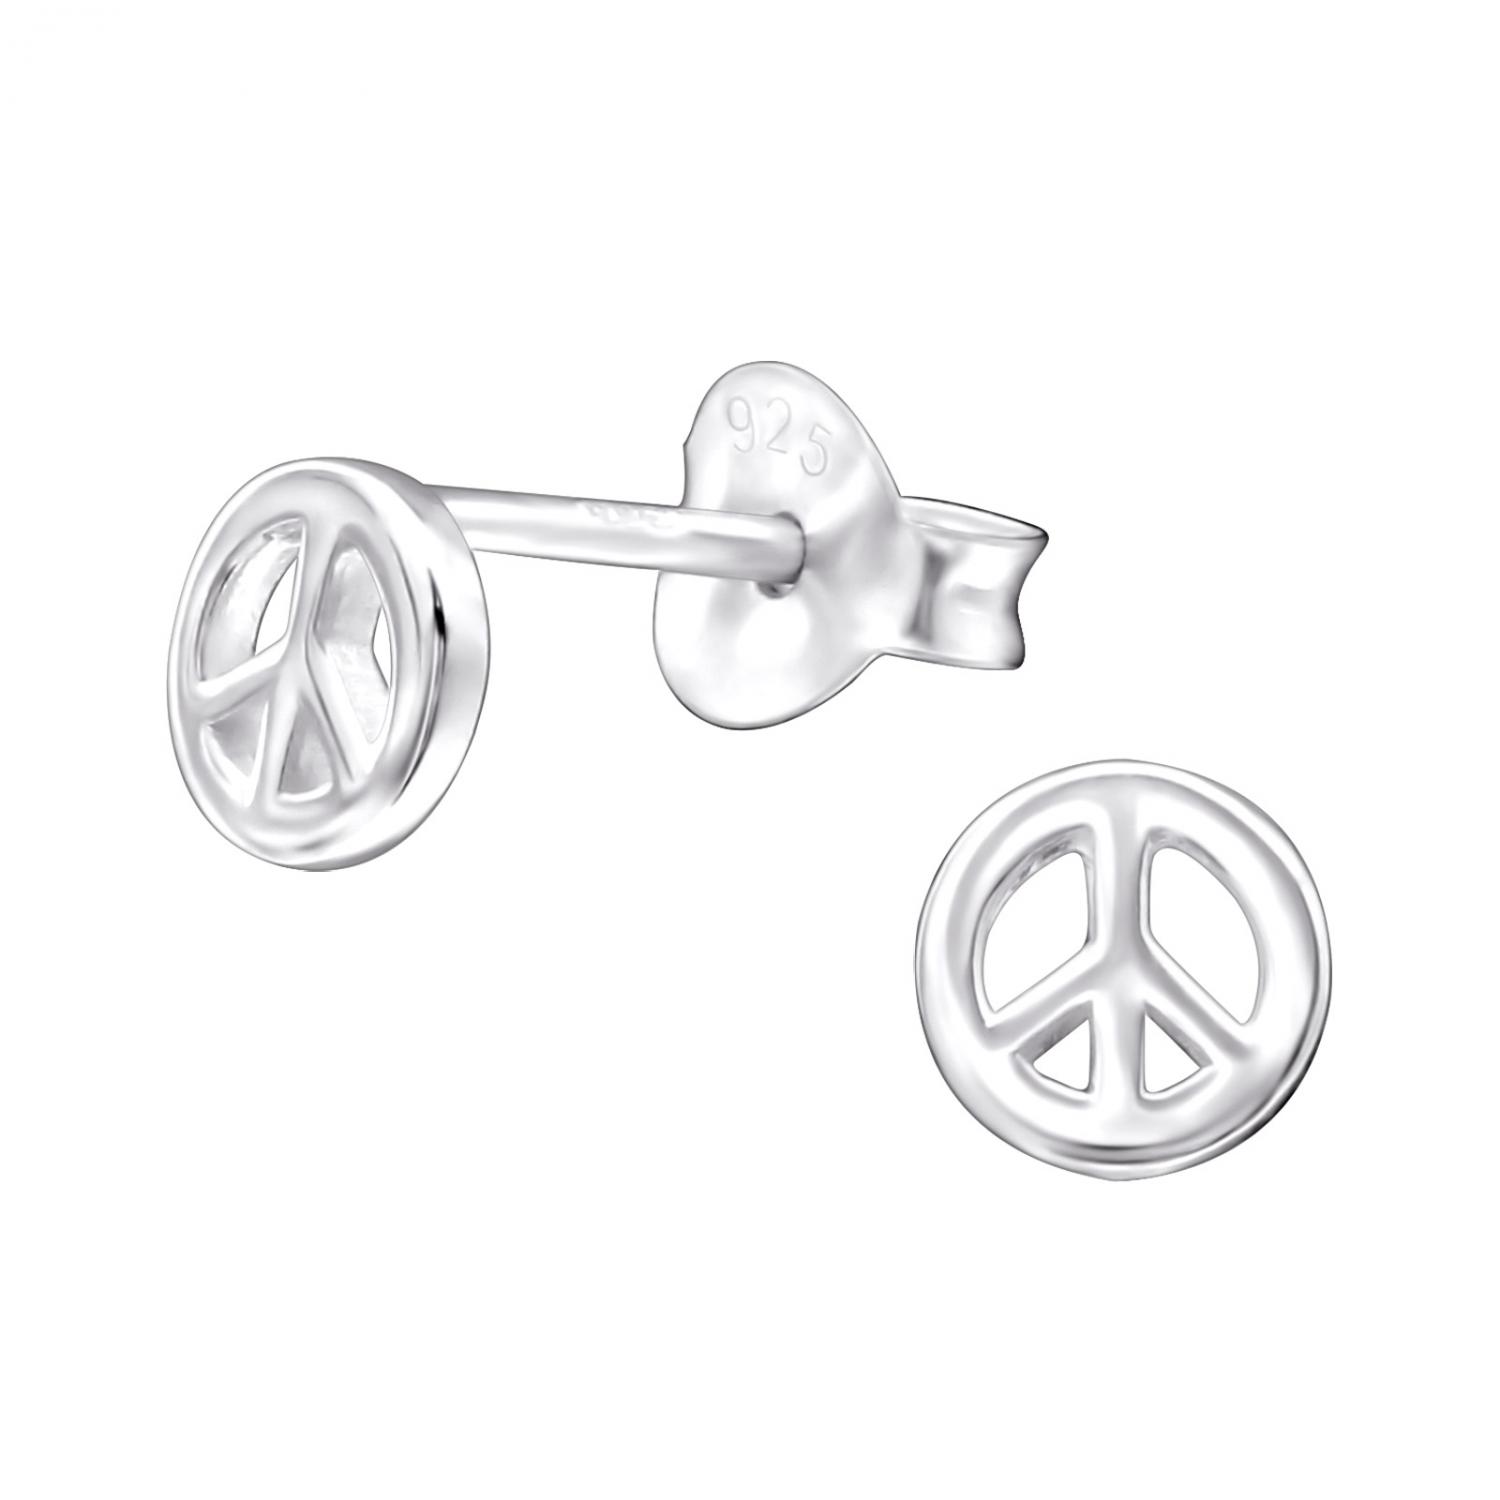 Peacemärken - Studs - Örhängen i äkta silver